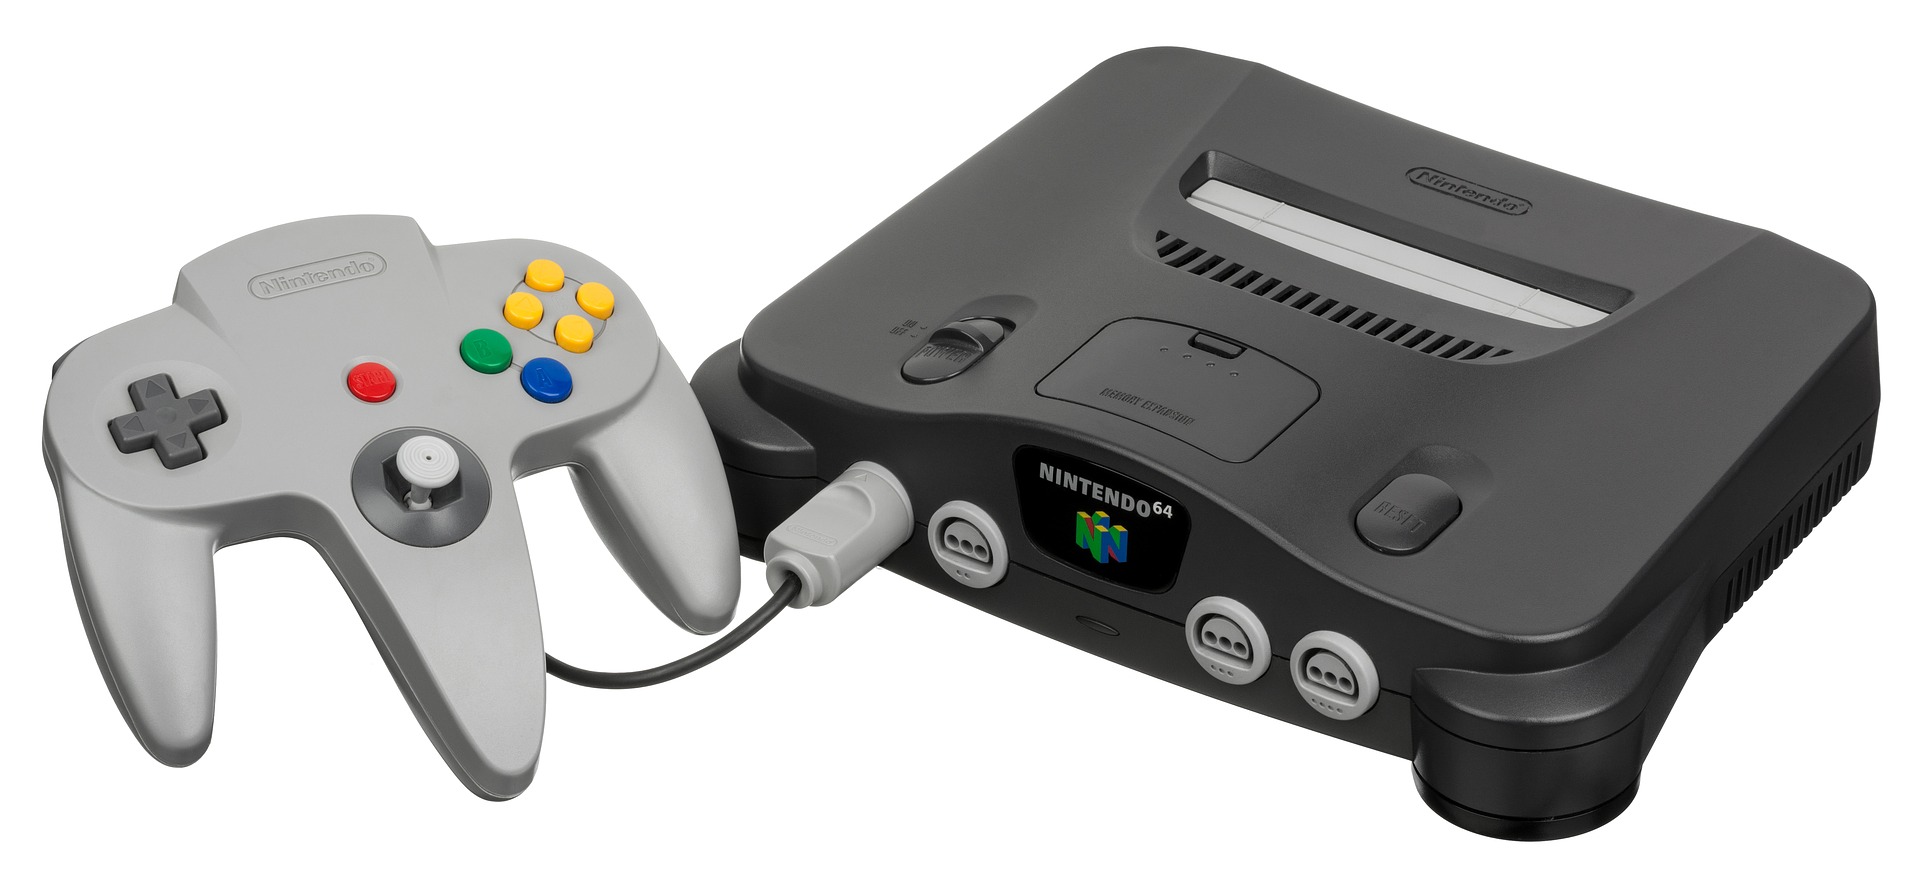 Nintendo 64 Goldeneye